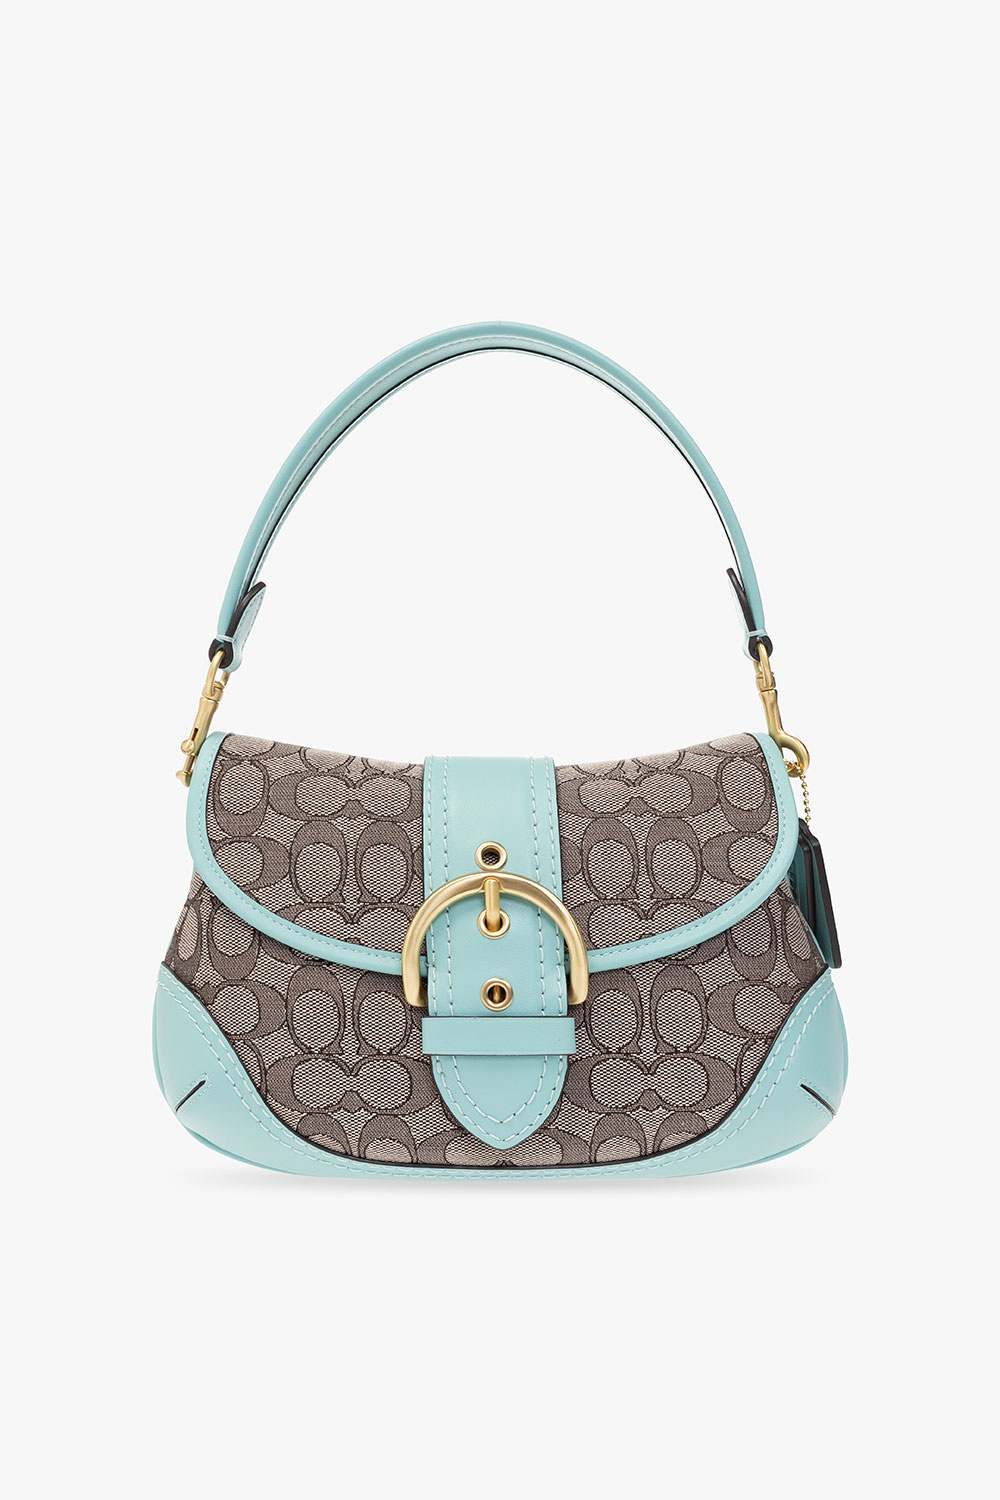 Women's COACH Handbags